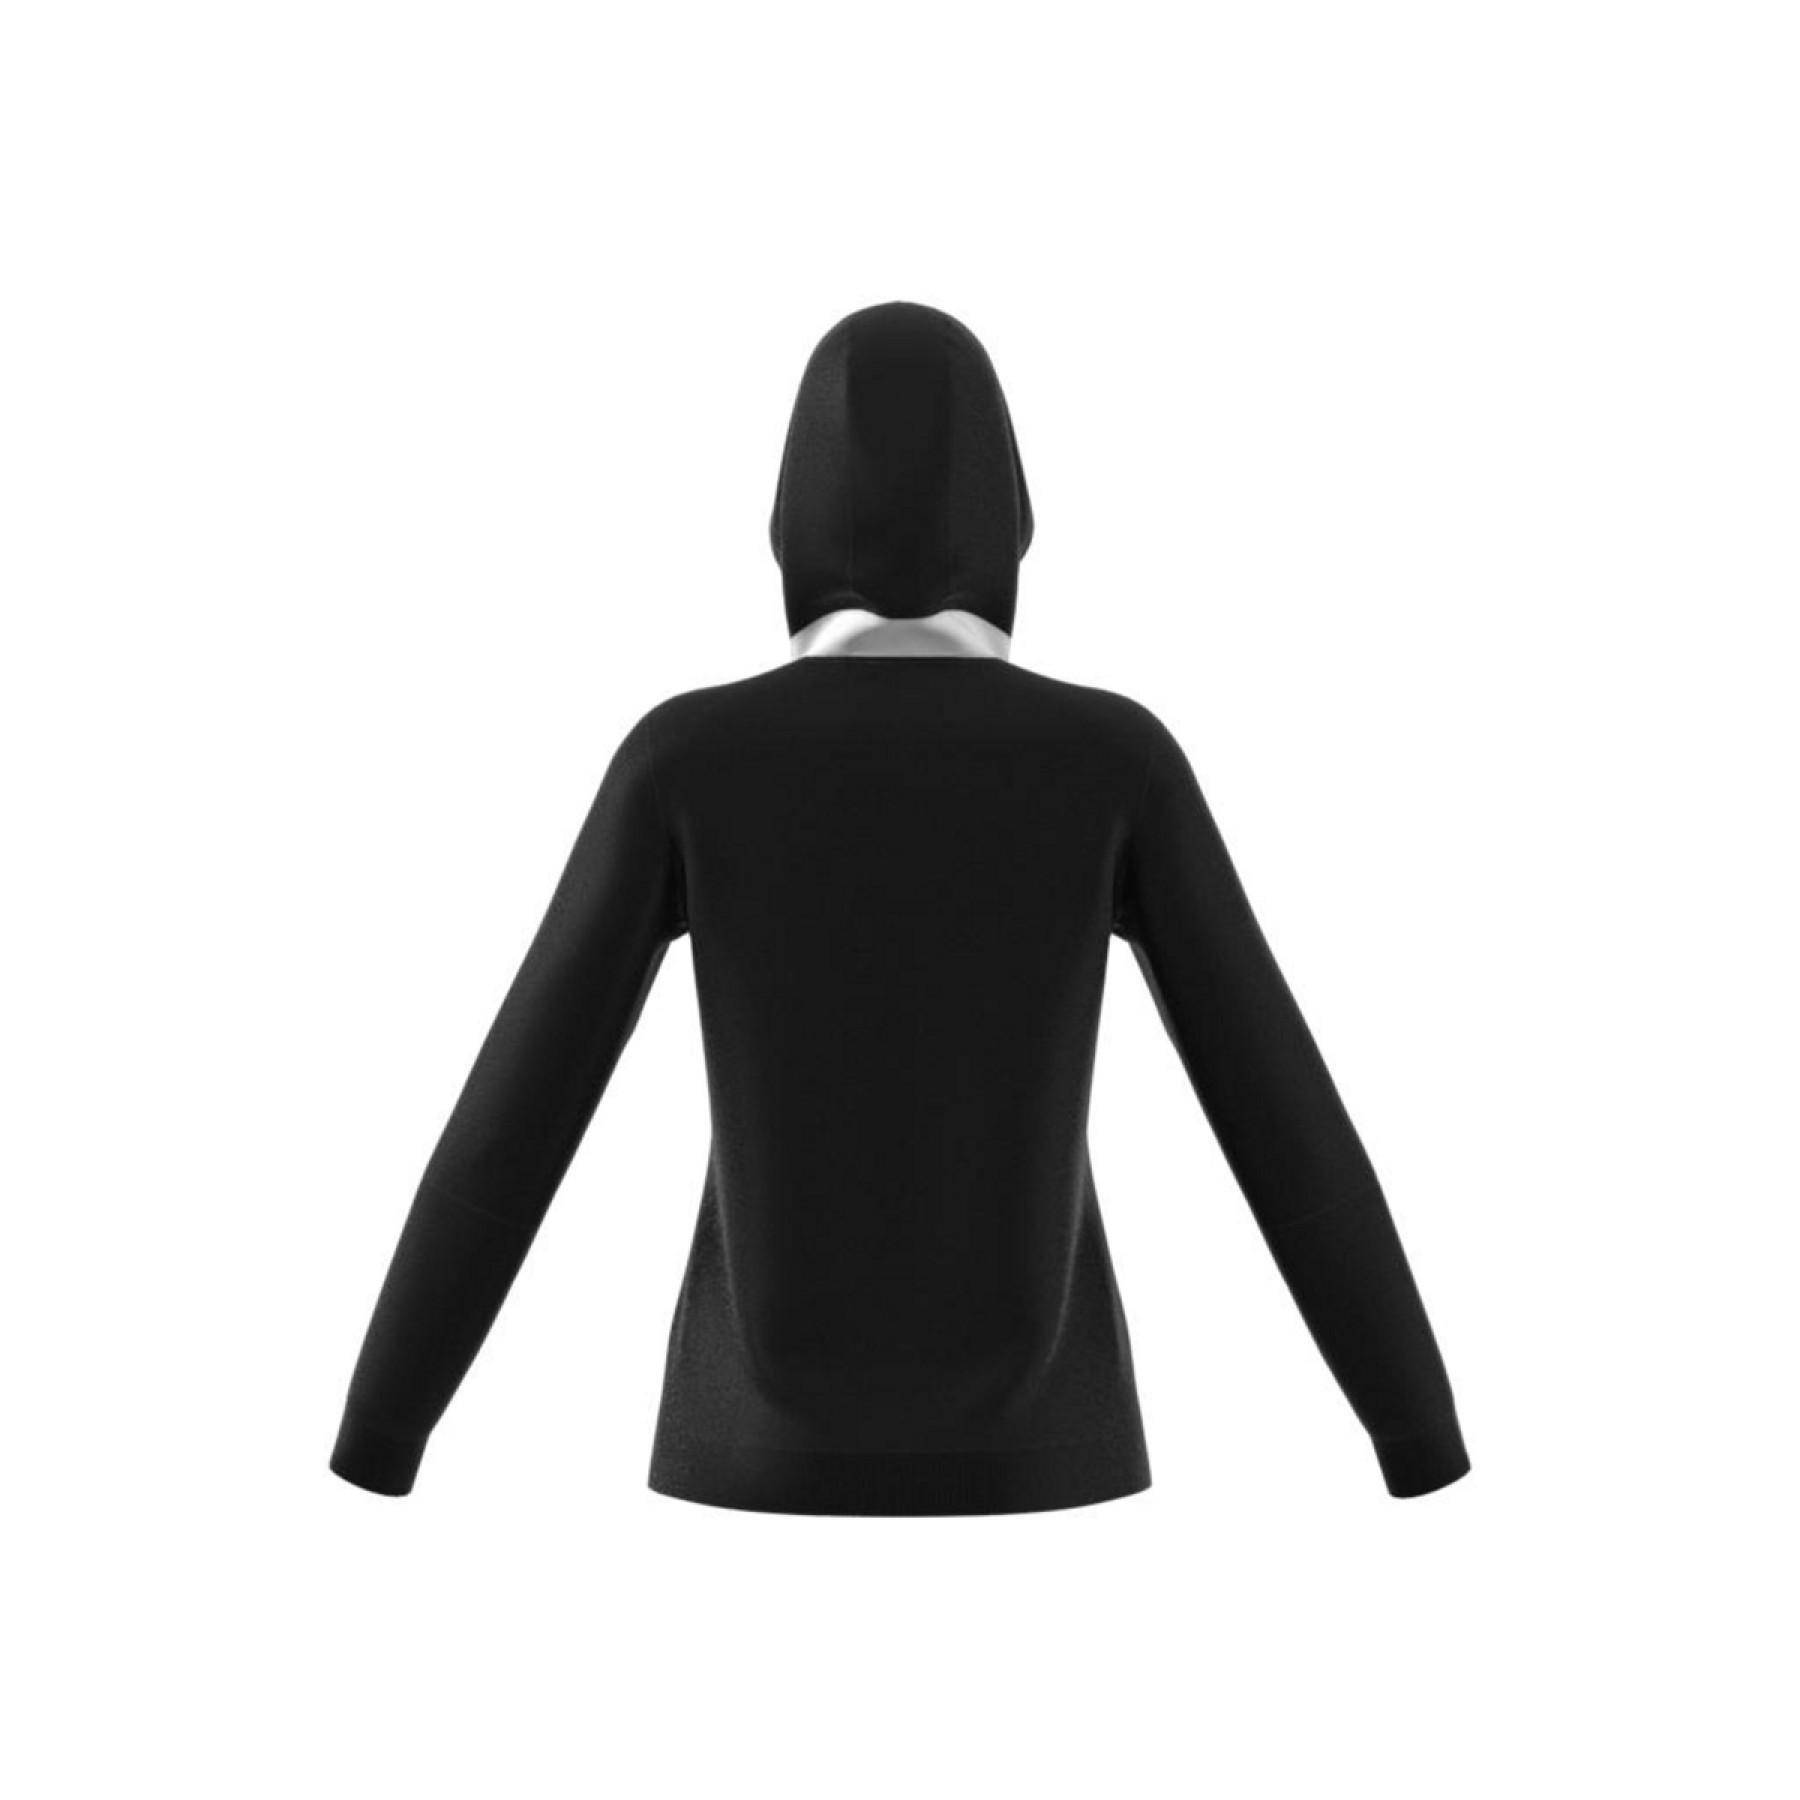 Women's hooded sweatshirt adidas Tiro 21